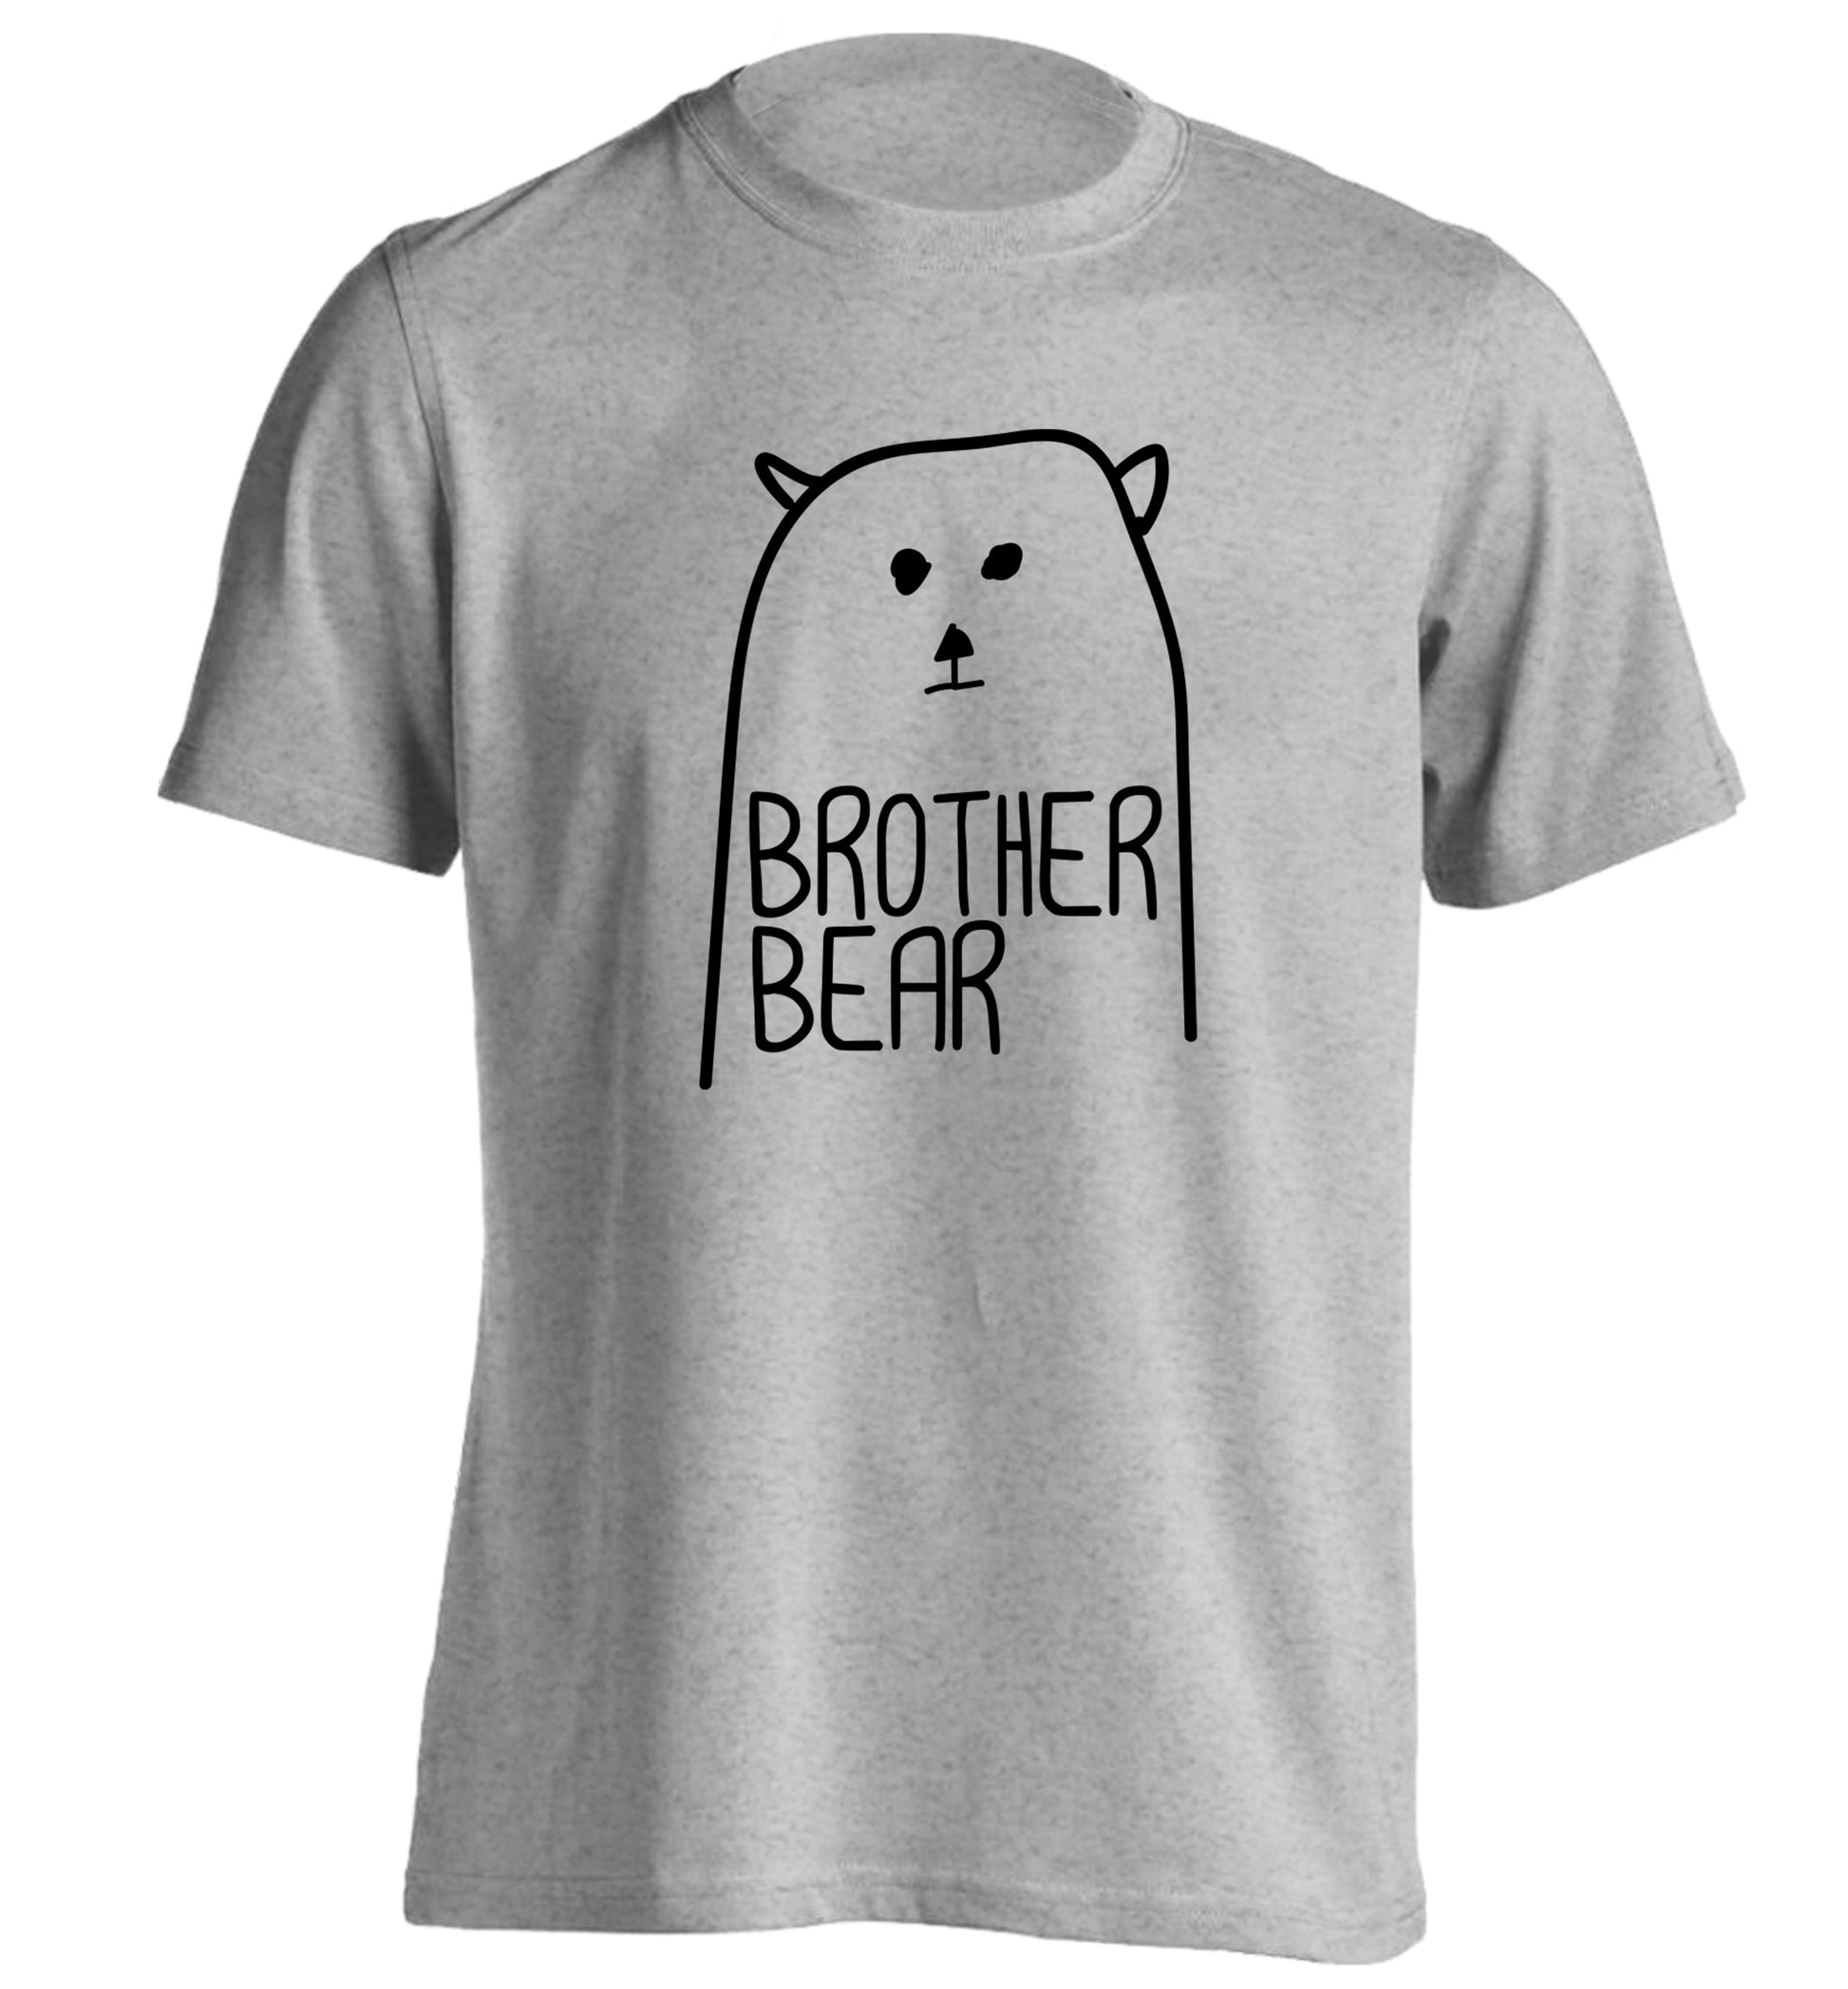 Brother bear adults unisex grey Tshirt 2XL